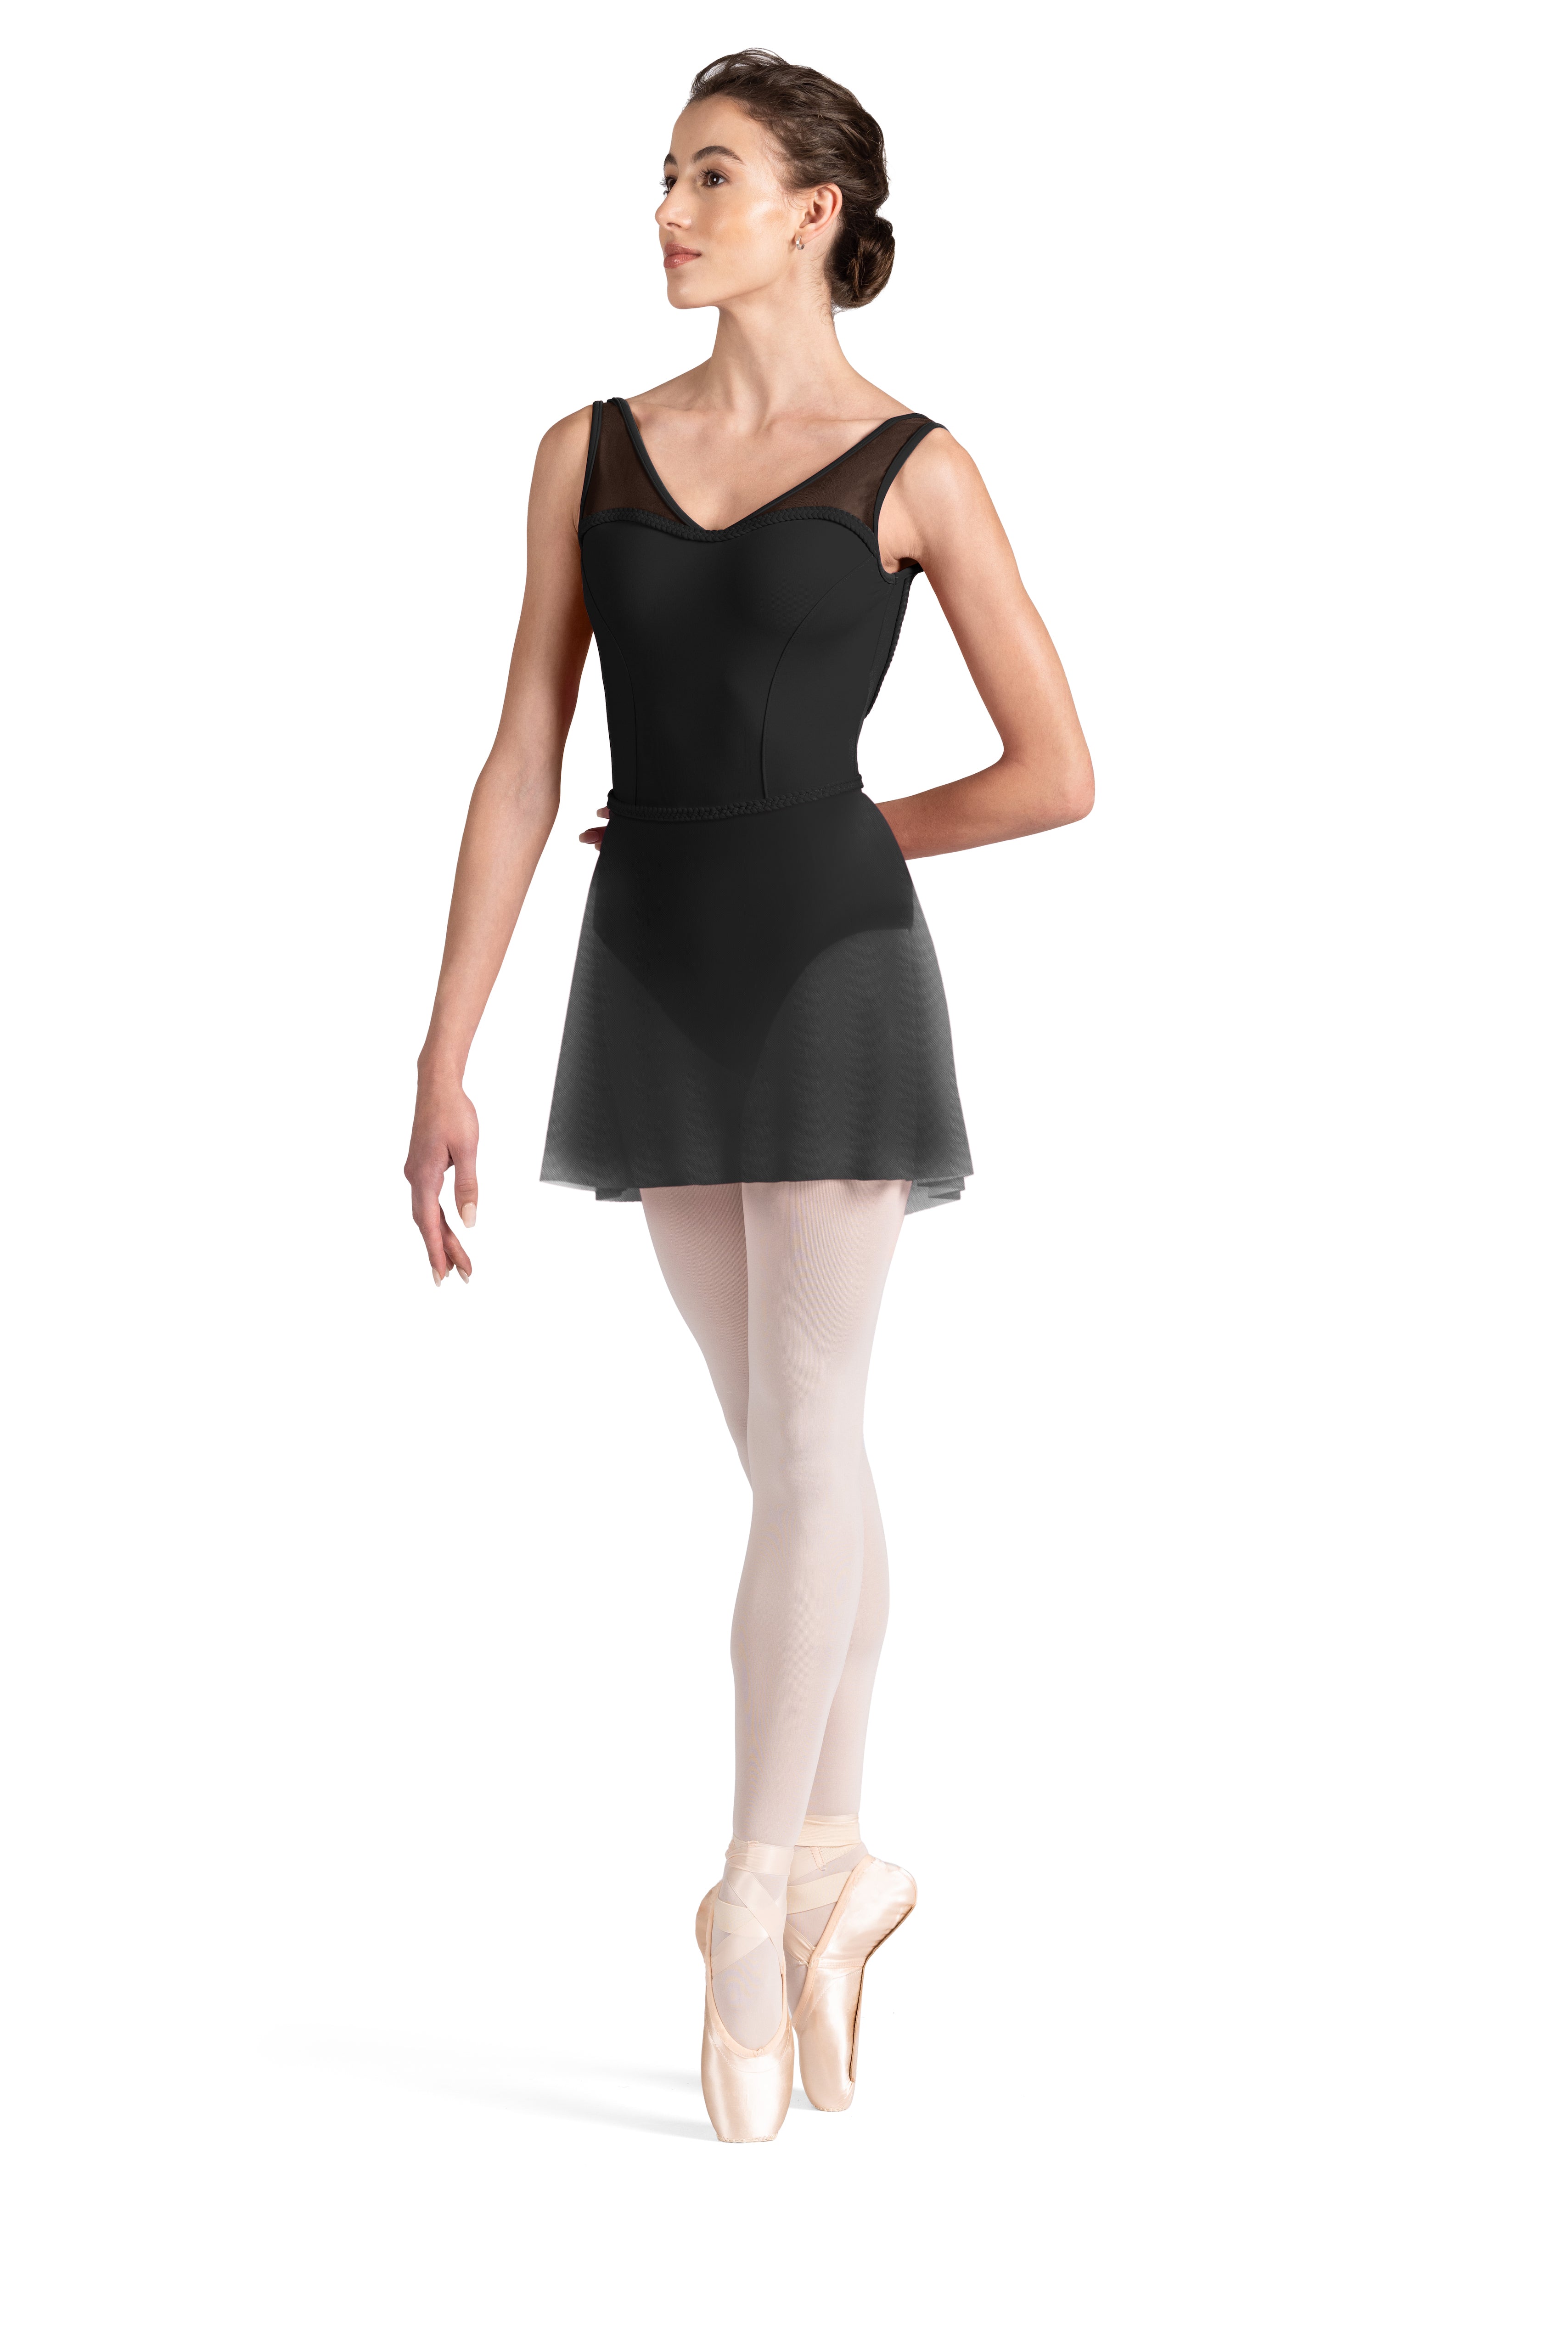 SLT171 Women's Ballroom Dance Body Suit